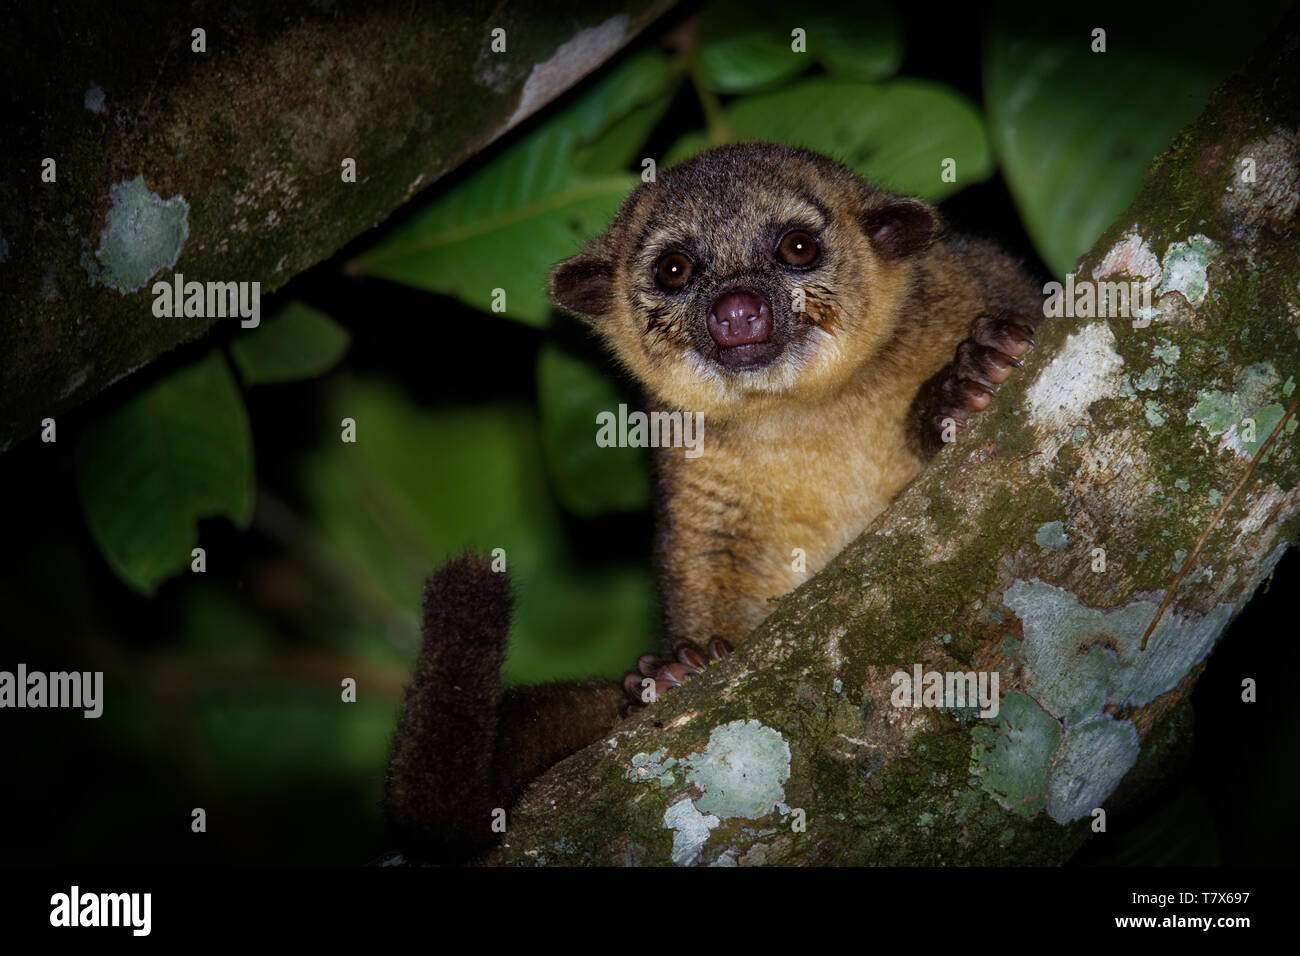 Kinkajou - Potos flavus, rainforest mammifère de la famille des Procyonidae olingos, coatis, ratons laveurs, et l'ringtail et cacomistle aussi connu. Banque D'Images